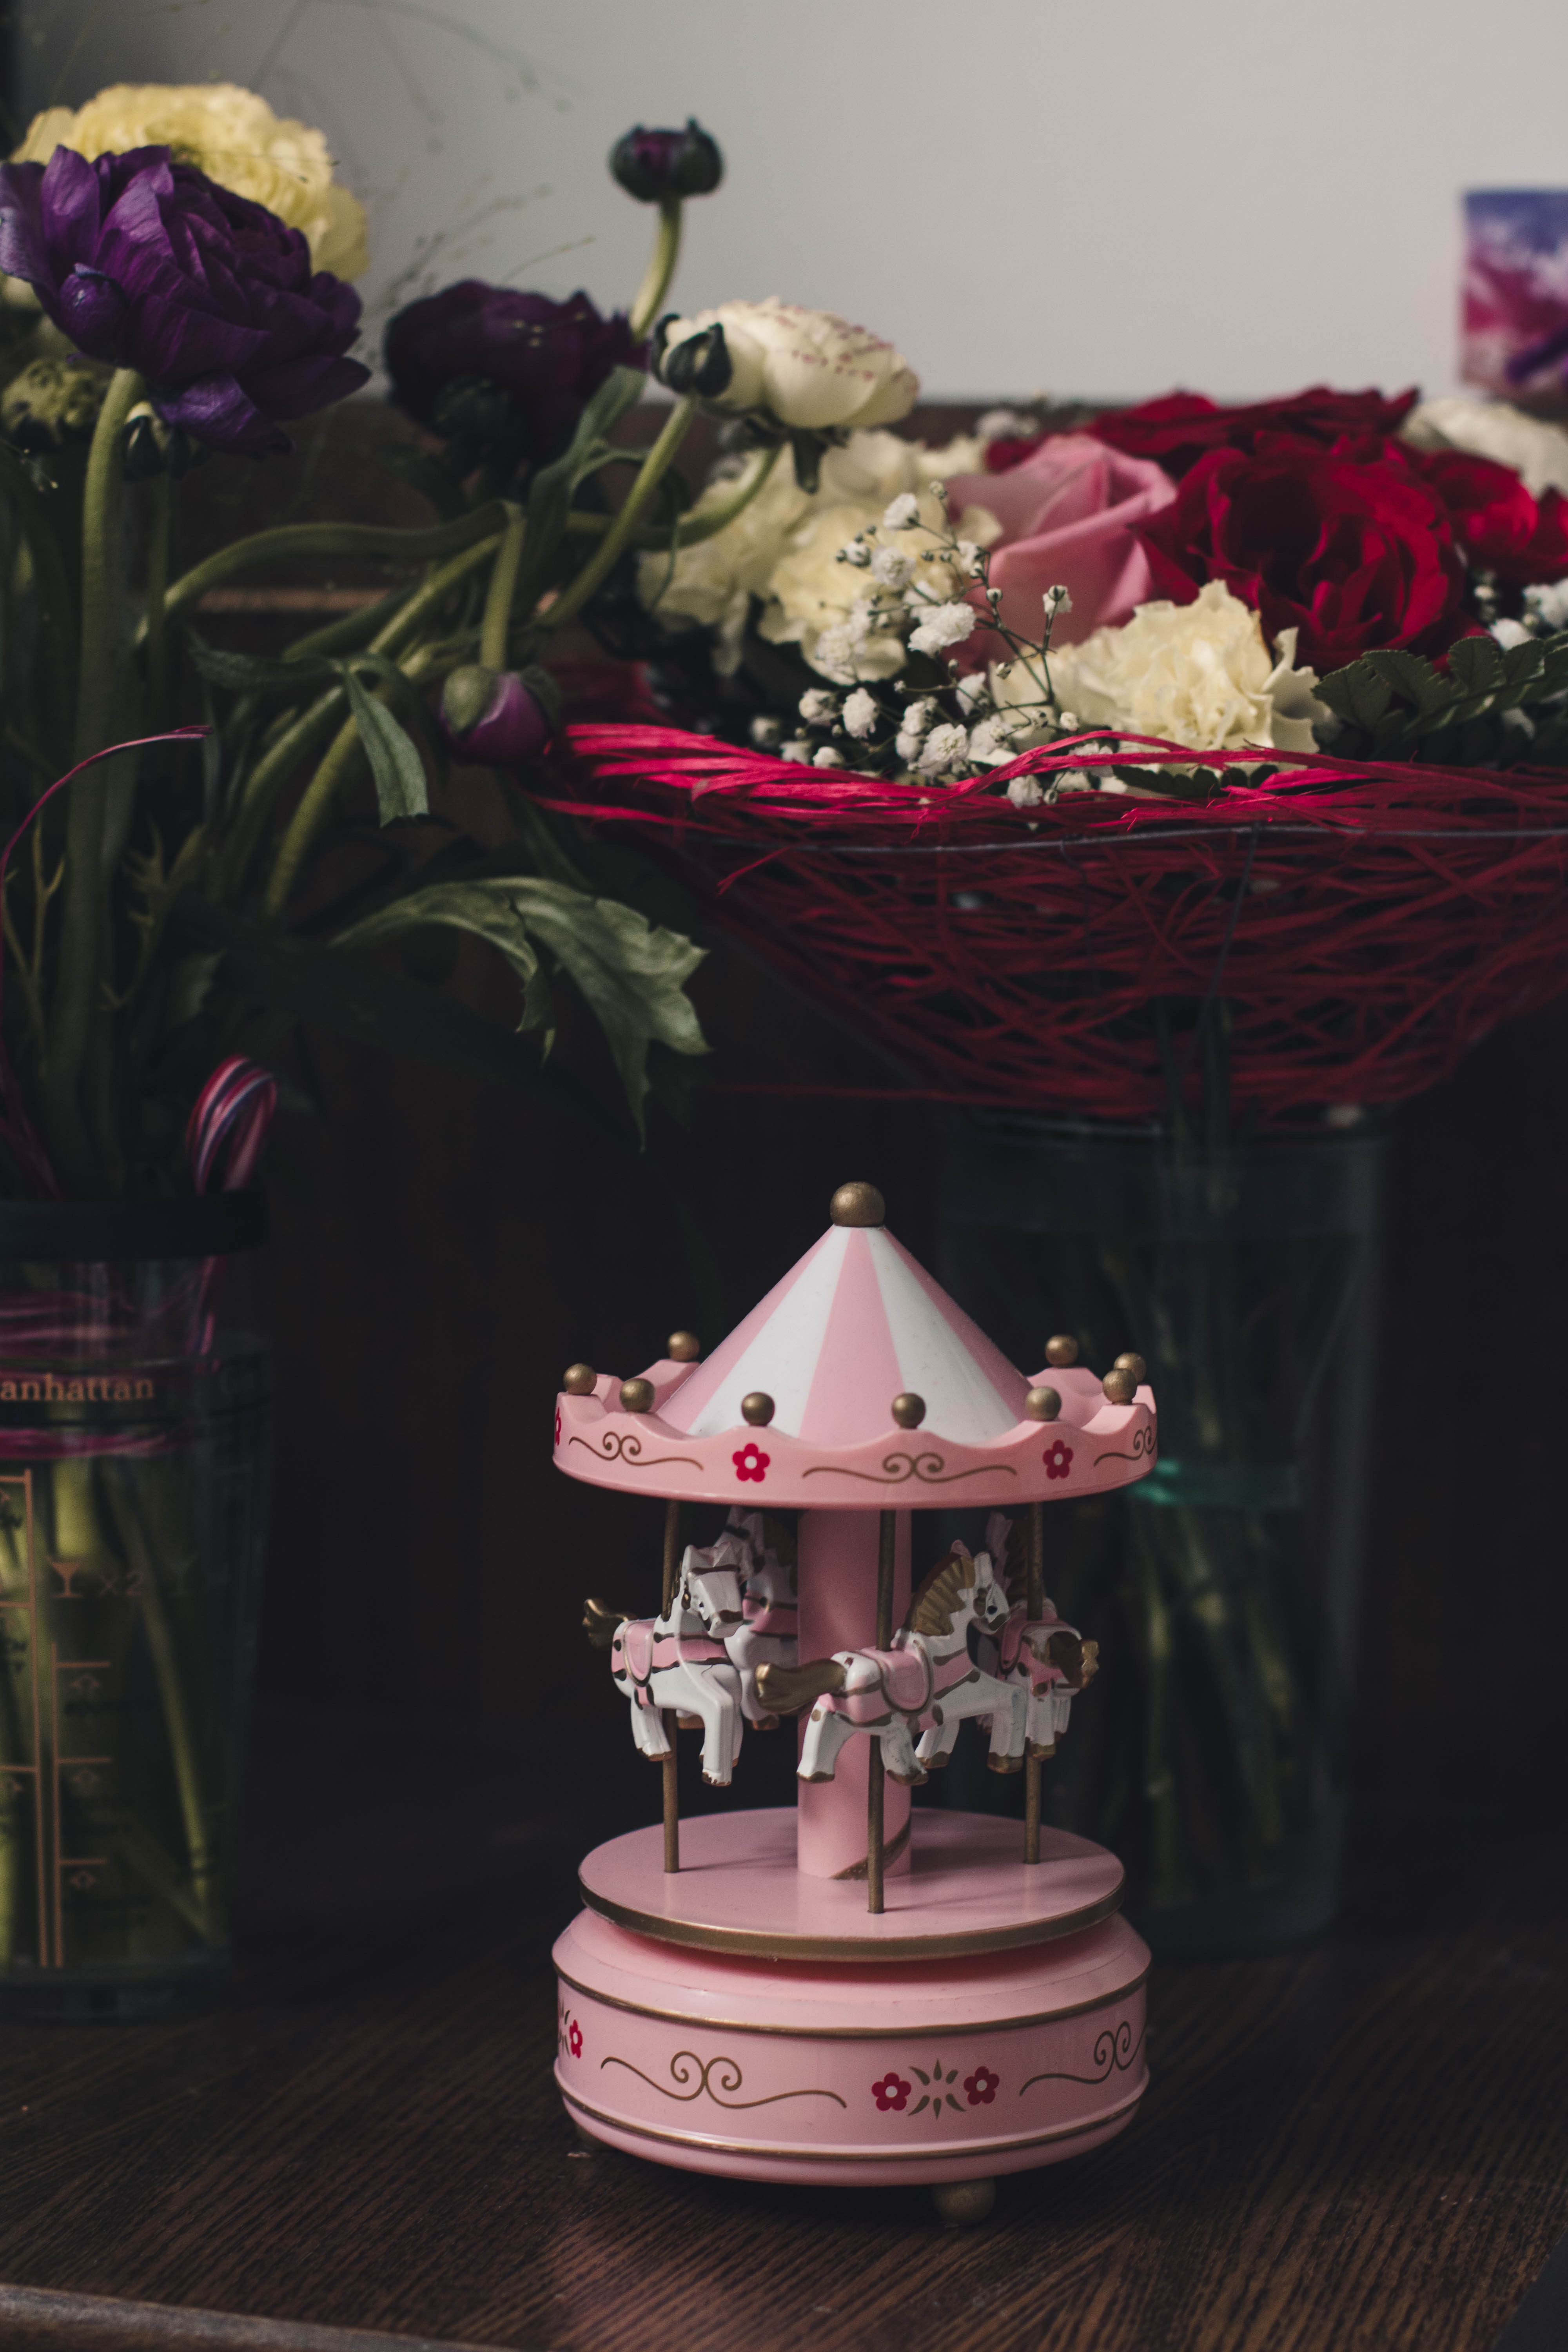 Pink Carousel Mini Figurine on Table, Art, Indoors, Table, Room, HQ Photo